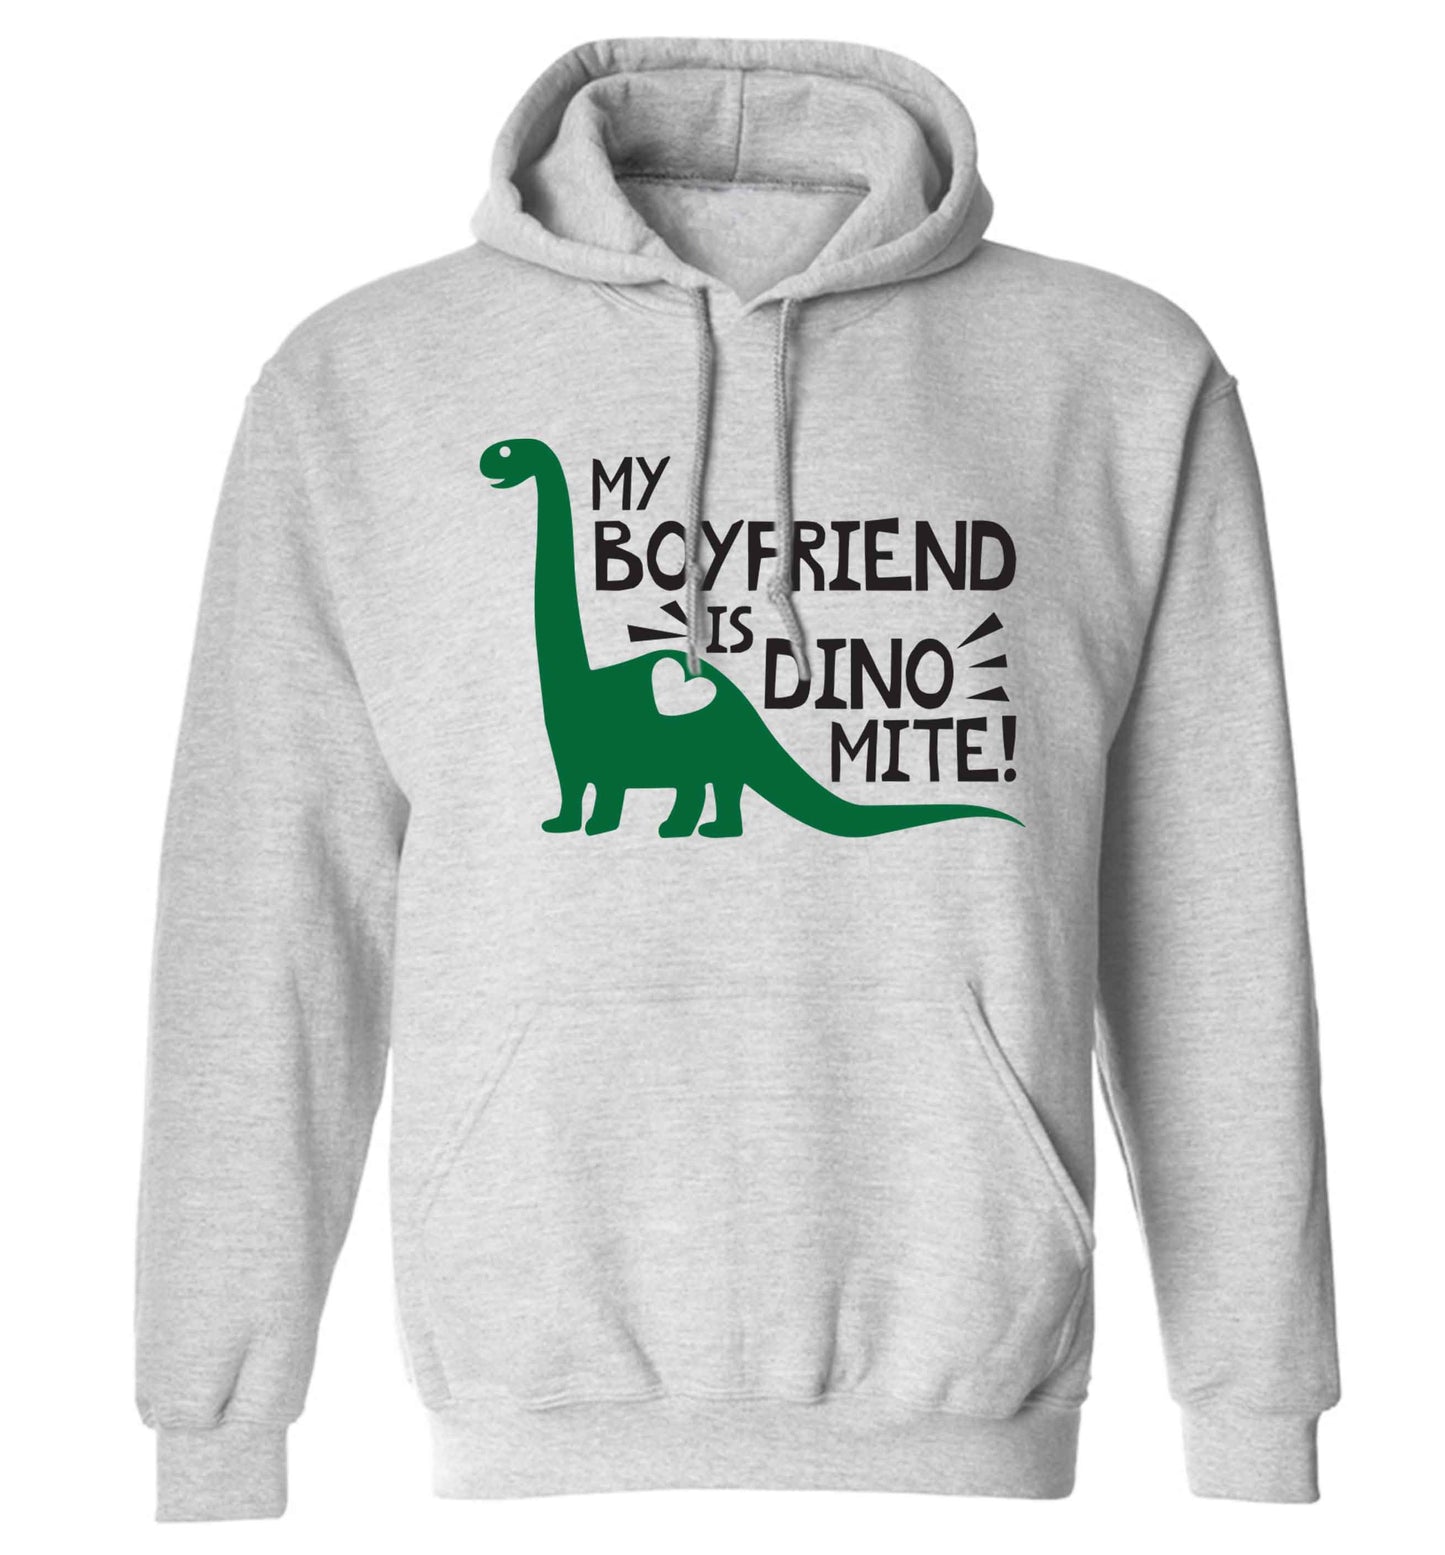 My boyfriend is dinomite! adults unisex grey hoodie 2XL